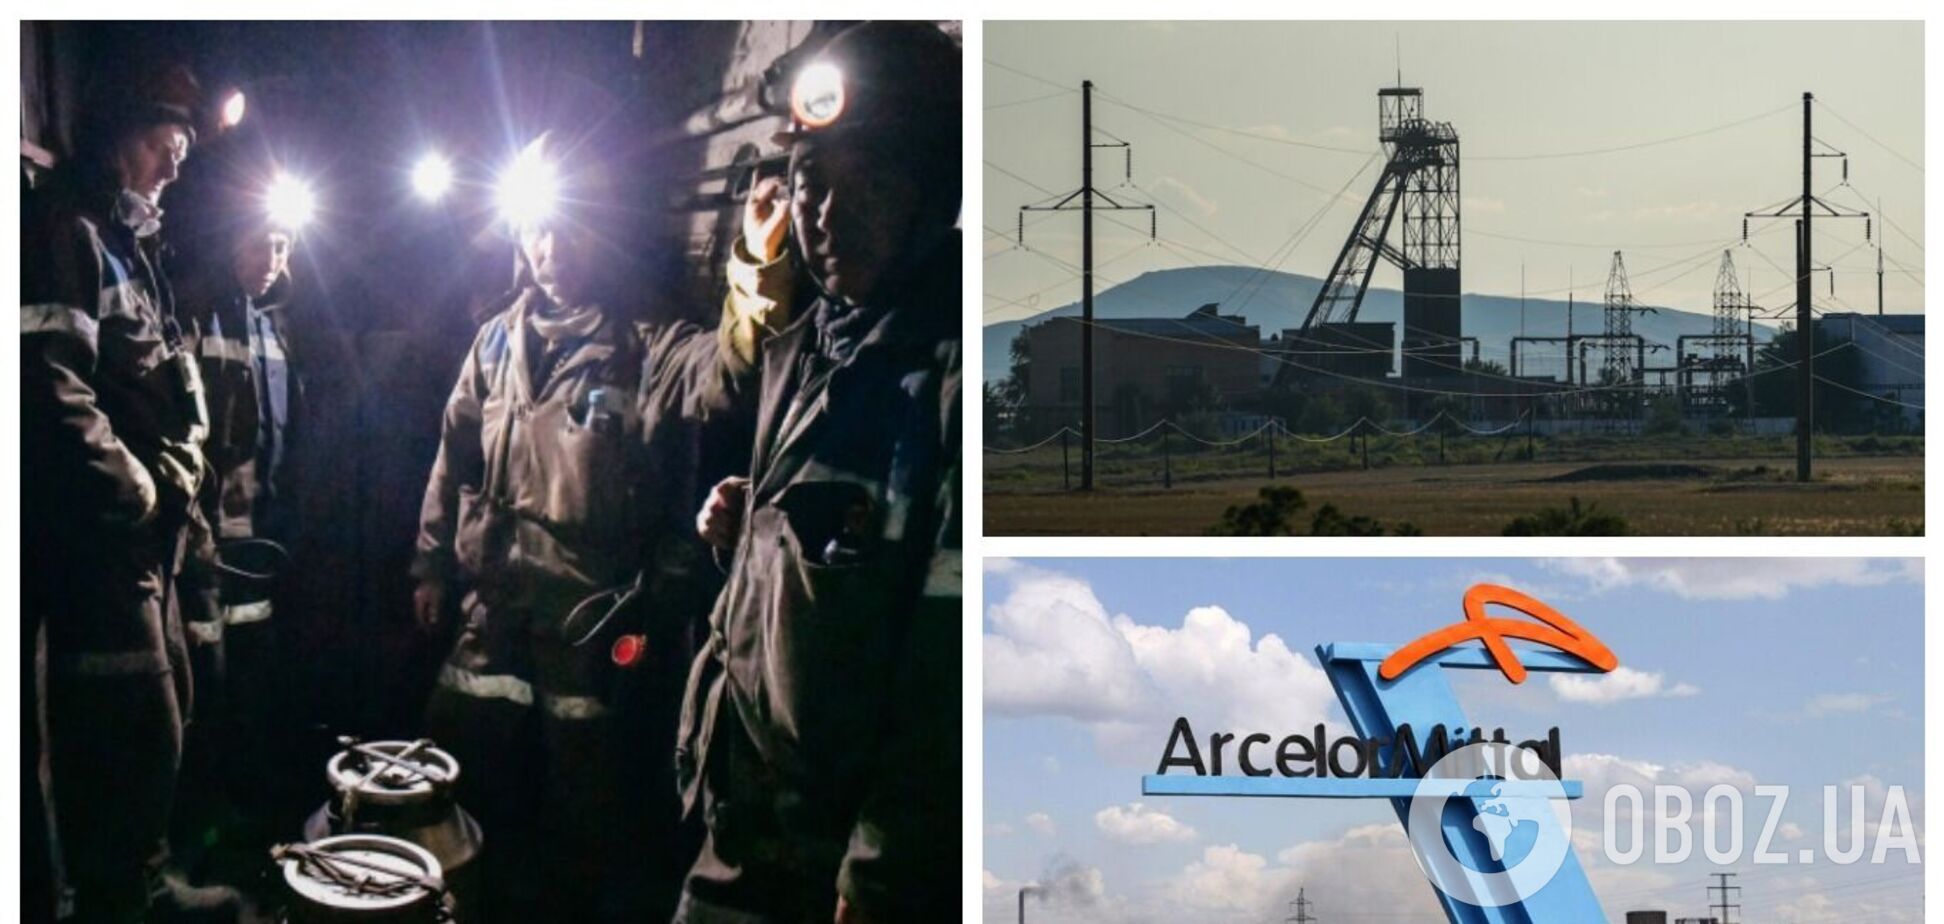 В Казахстане произошел пожар на шахте: погиб 21 человек, многие пострадали